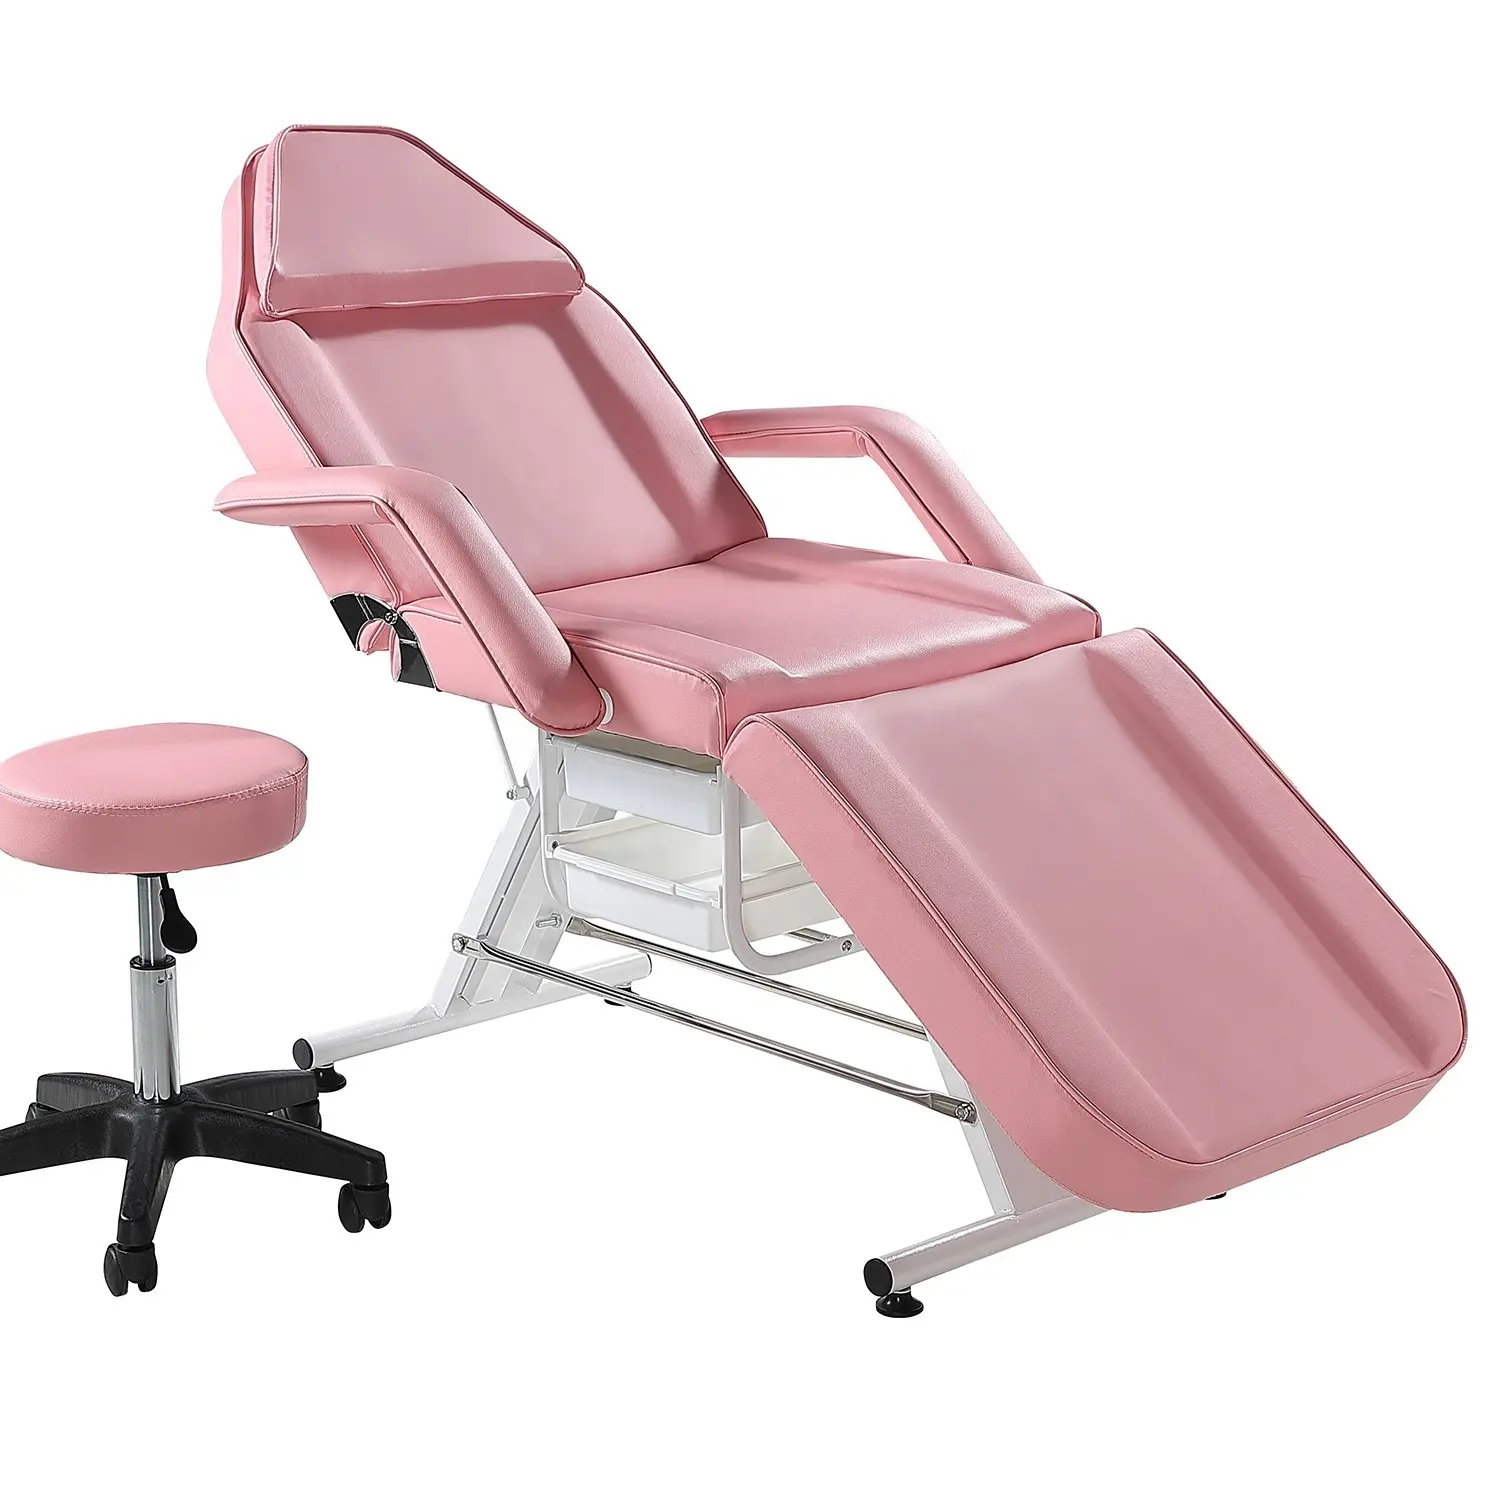 Cama multifuncional ajustable Facial rosa, salón de belleza, pestañas reclinables, mesa de pestañas, silla de tatuaje plegable, cama de masaje